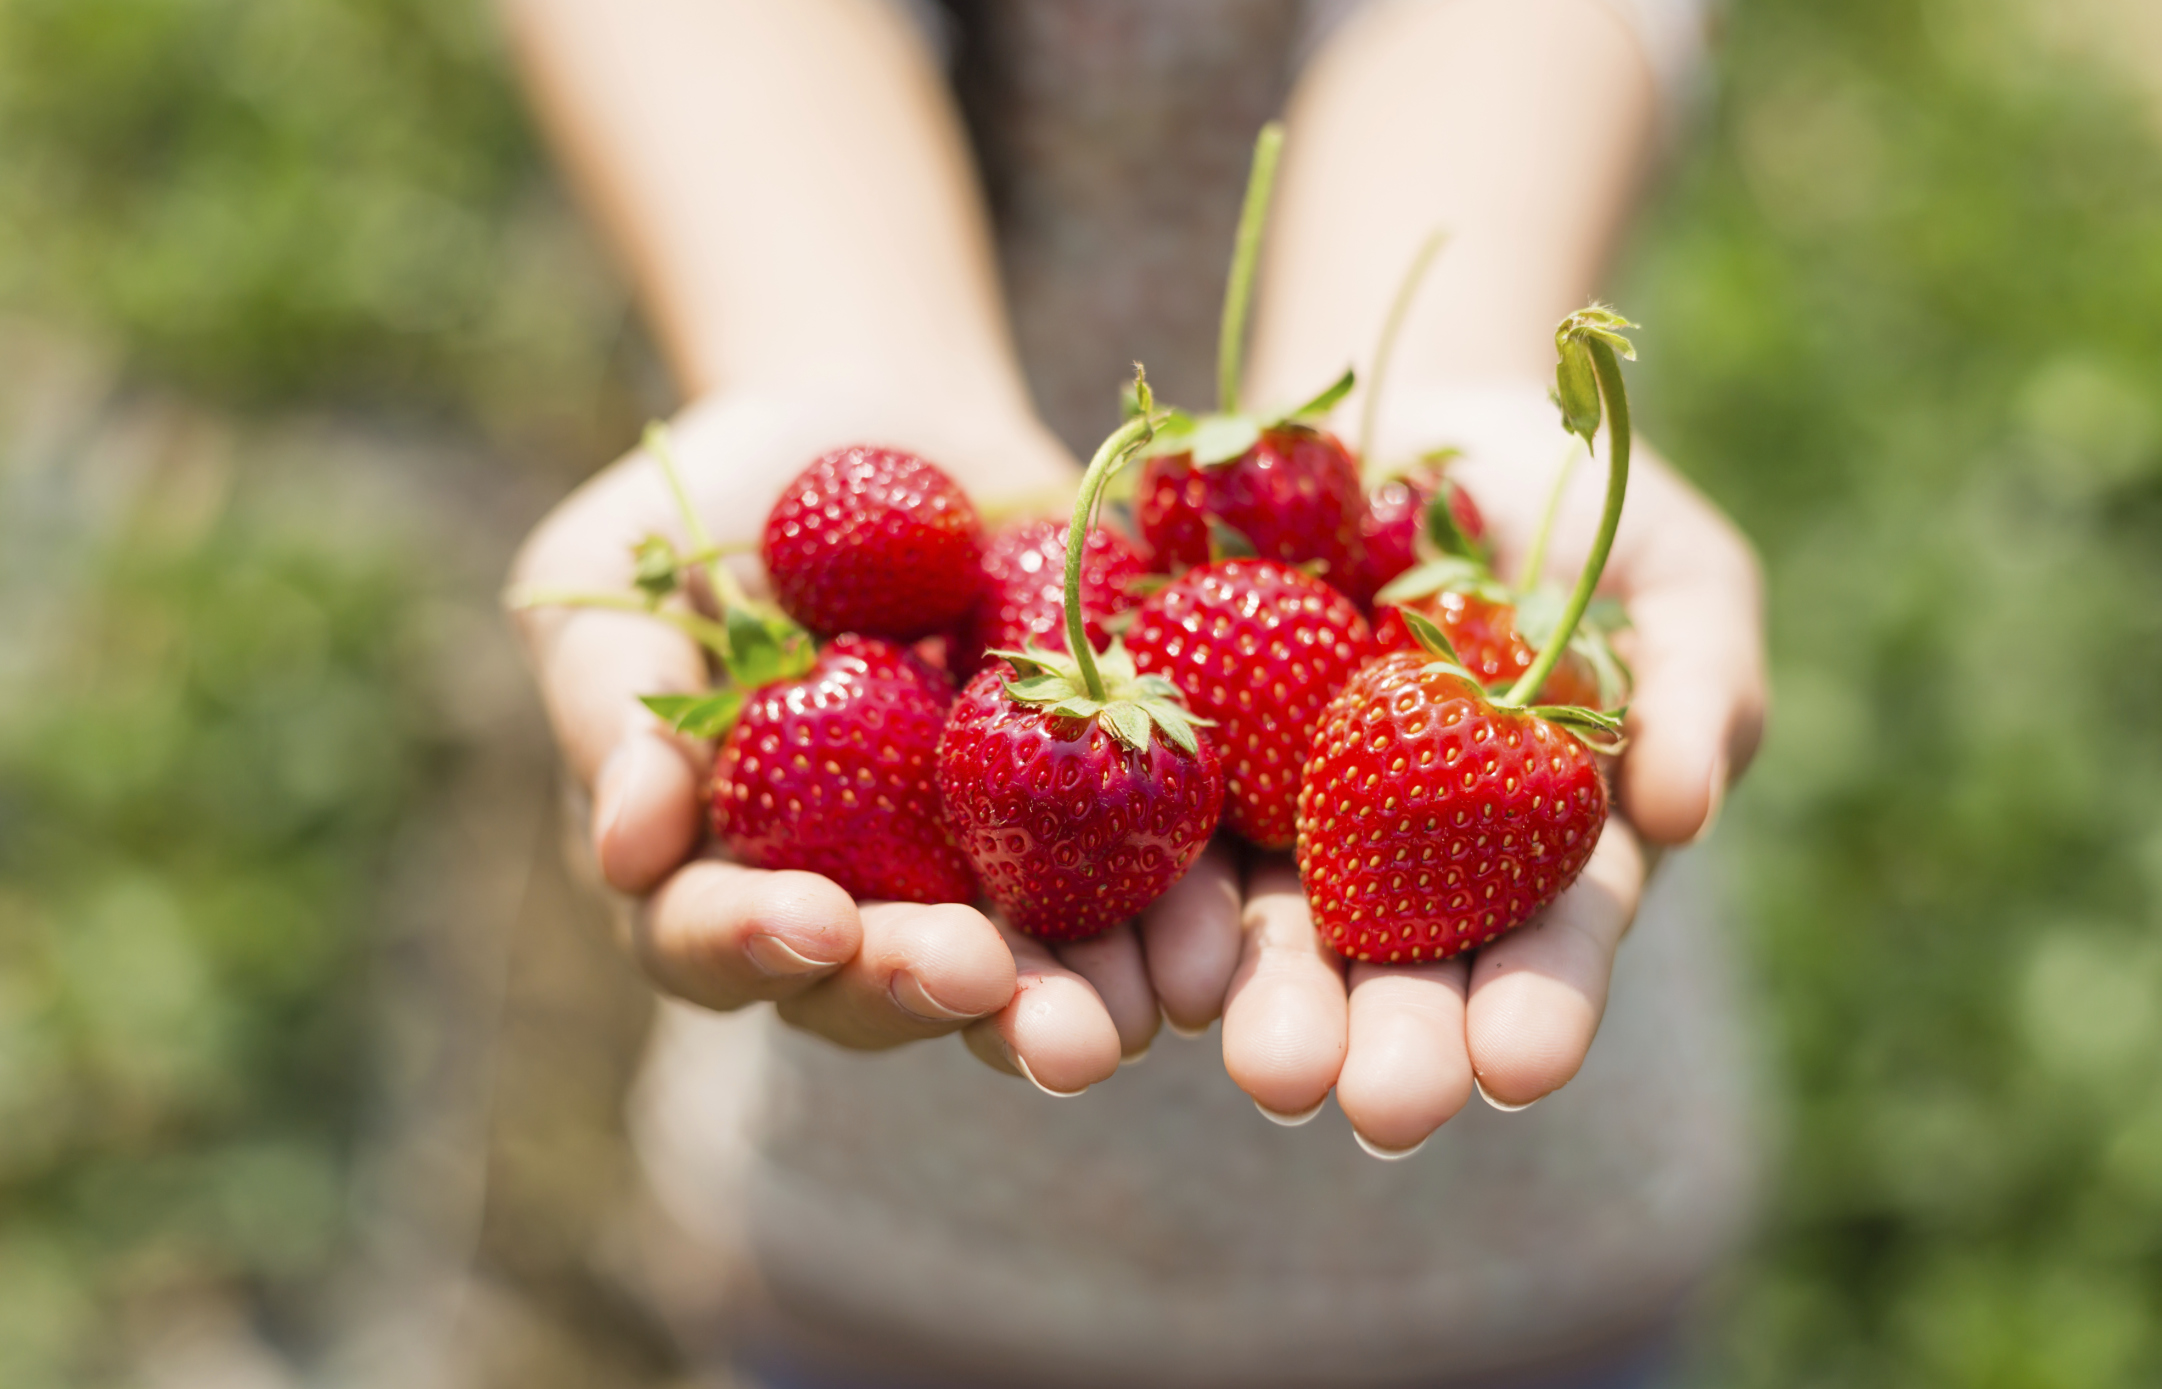 Ягоди<br />
<br />
Kакто органичните, така и конвенционално отглежданите ягоди получават ярко червеният си цвят от антиоксидантни съединения, за които е установено, че намаляват възпалението и намаляват риска от сърдечно-съдови заболявания, рак и когнитивен спад. Въпреки това конвенционалните ягоди имат сериозен недостатък: те са покрити с пестициди, които могат да причинят забавяне в метаболизма и да направят по-трудно отслабването. Вашият най-добър ход е да купувате органични плодове и зеленчуци, когато е възможно.